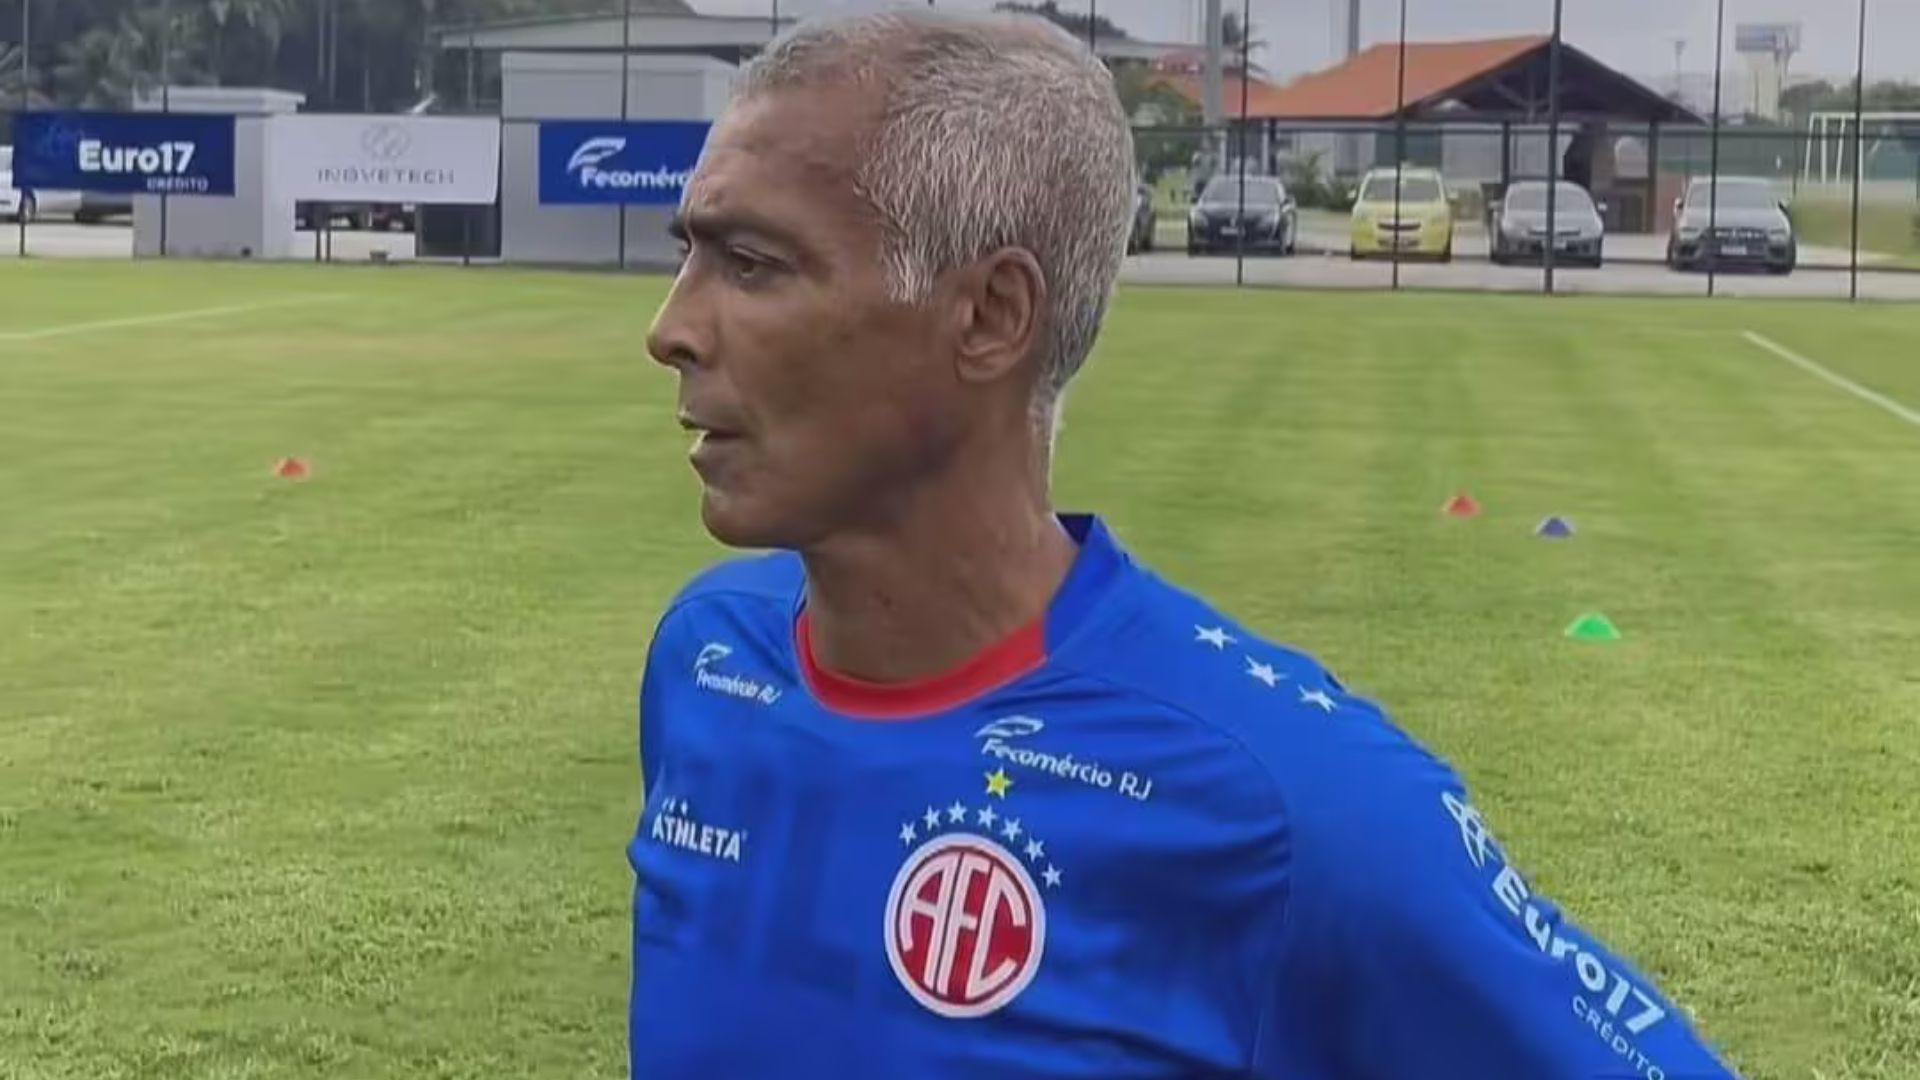 Romário brinca sobre se dividir entre função de presidente e jogador: "Se o treinador não gostar, demito"